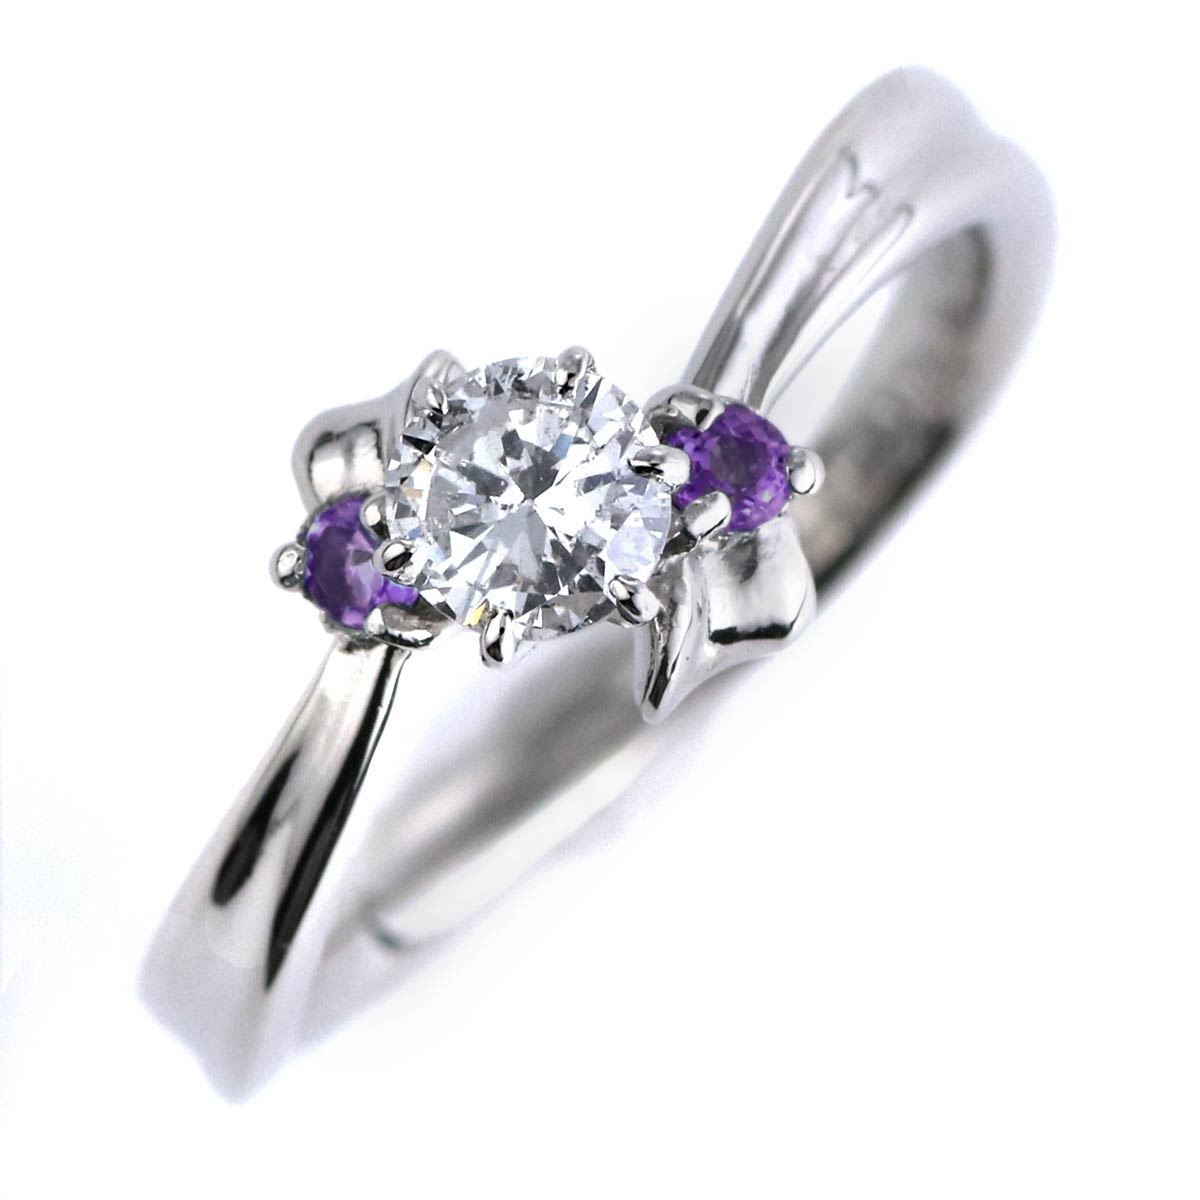 婚約指輪 ダイヤモンド プラチナリング 一粒 大粒 指輪 エンゲージリング 0.5ct プロポーズ用 レディース 人気 ダイヤ 刻印無料 2月 誕生石 アメジスト